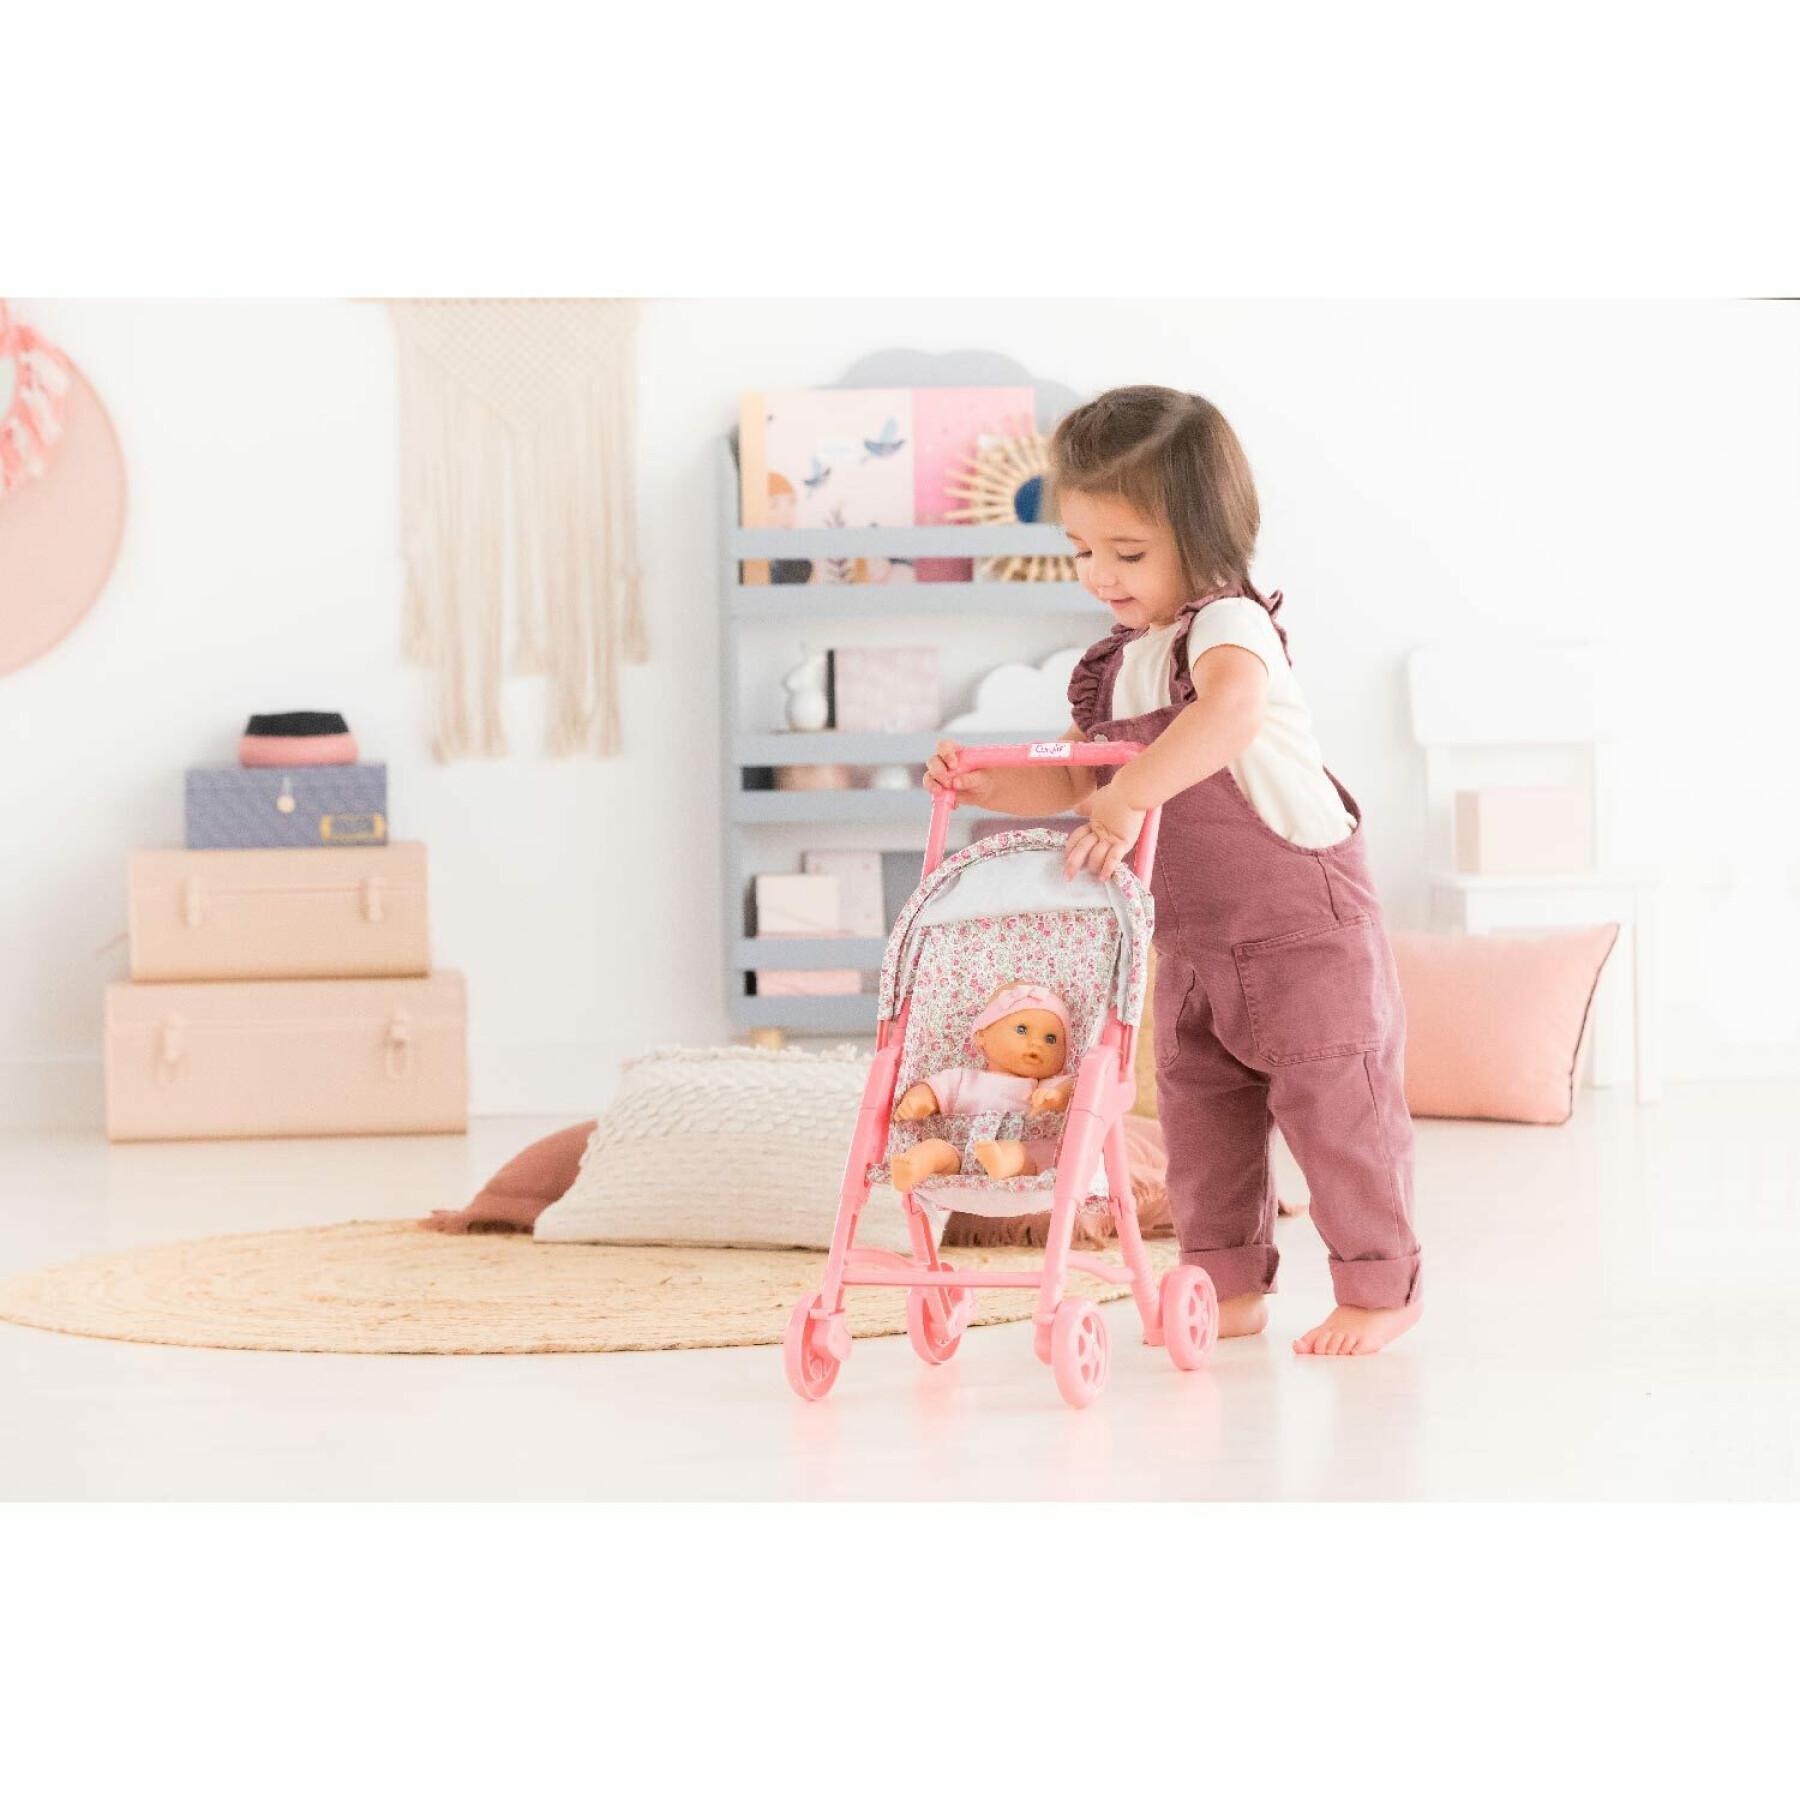 Blommig barnvagn för spädbarn Corolle